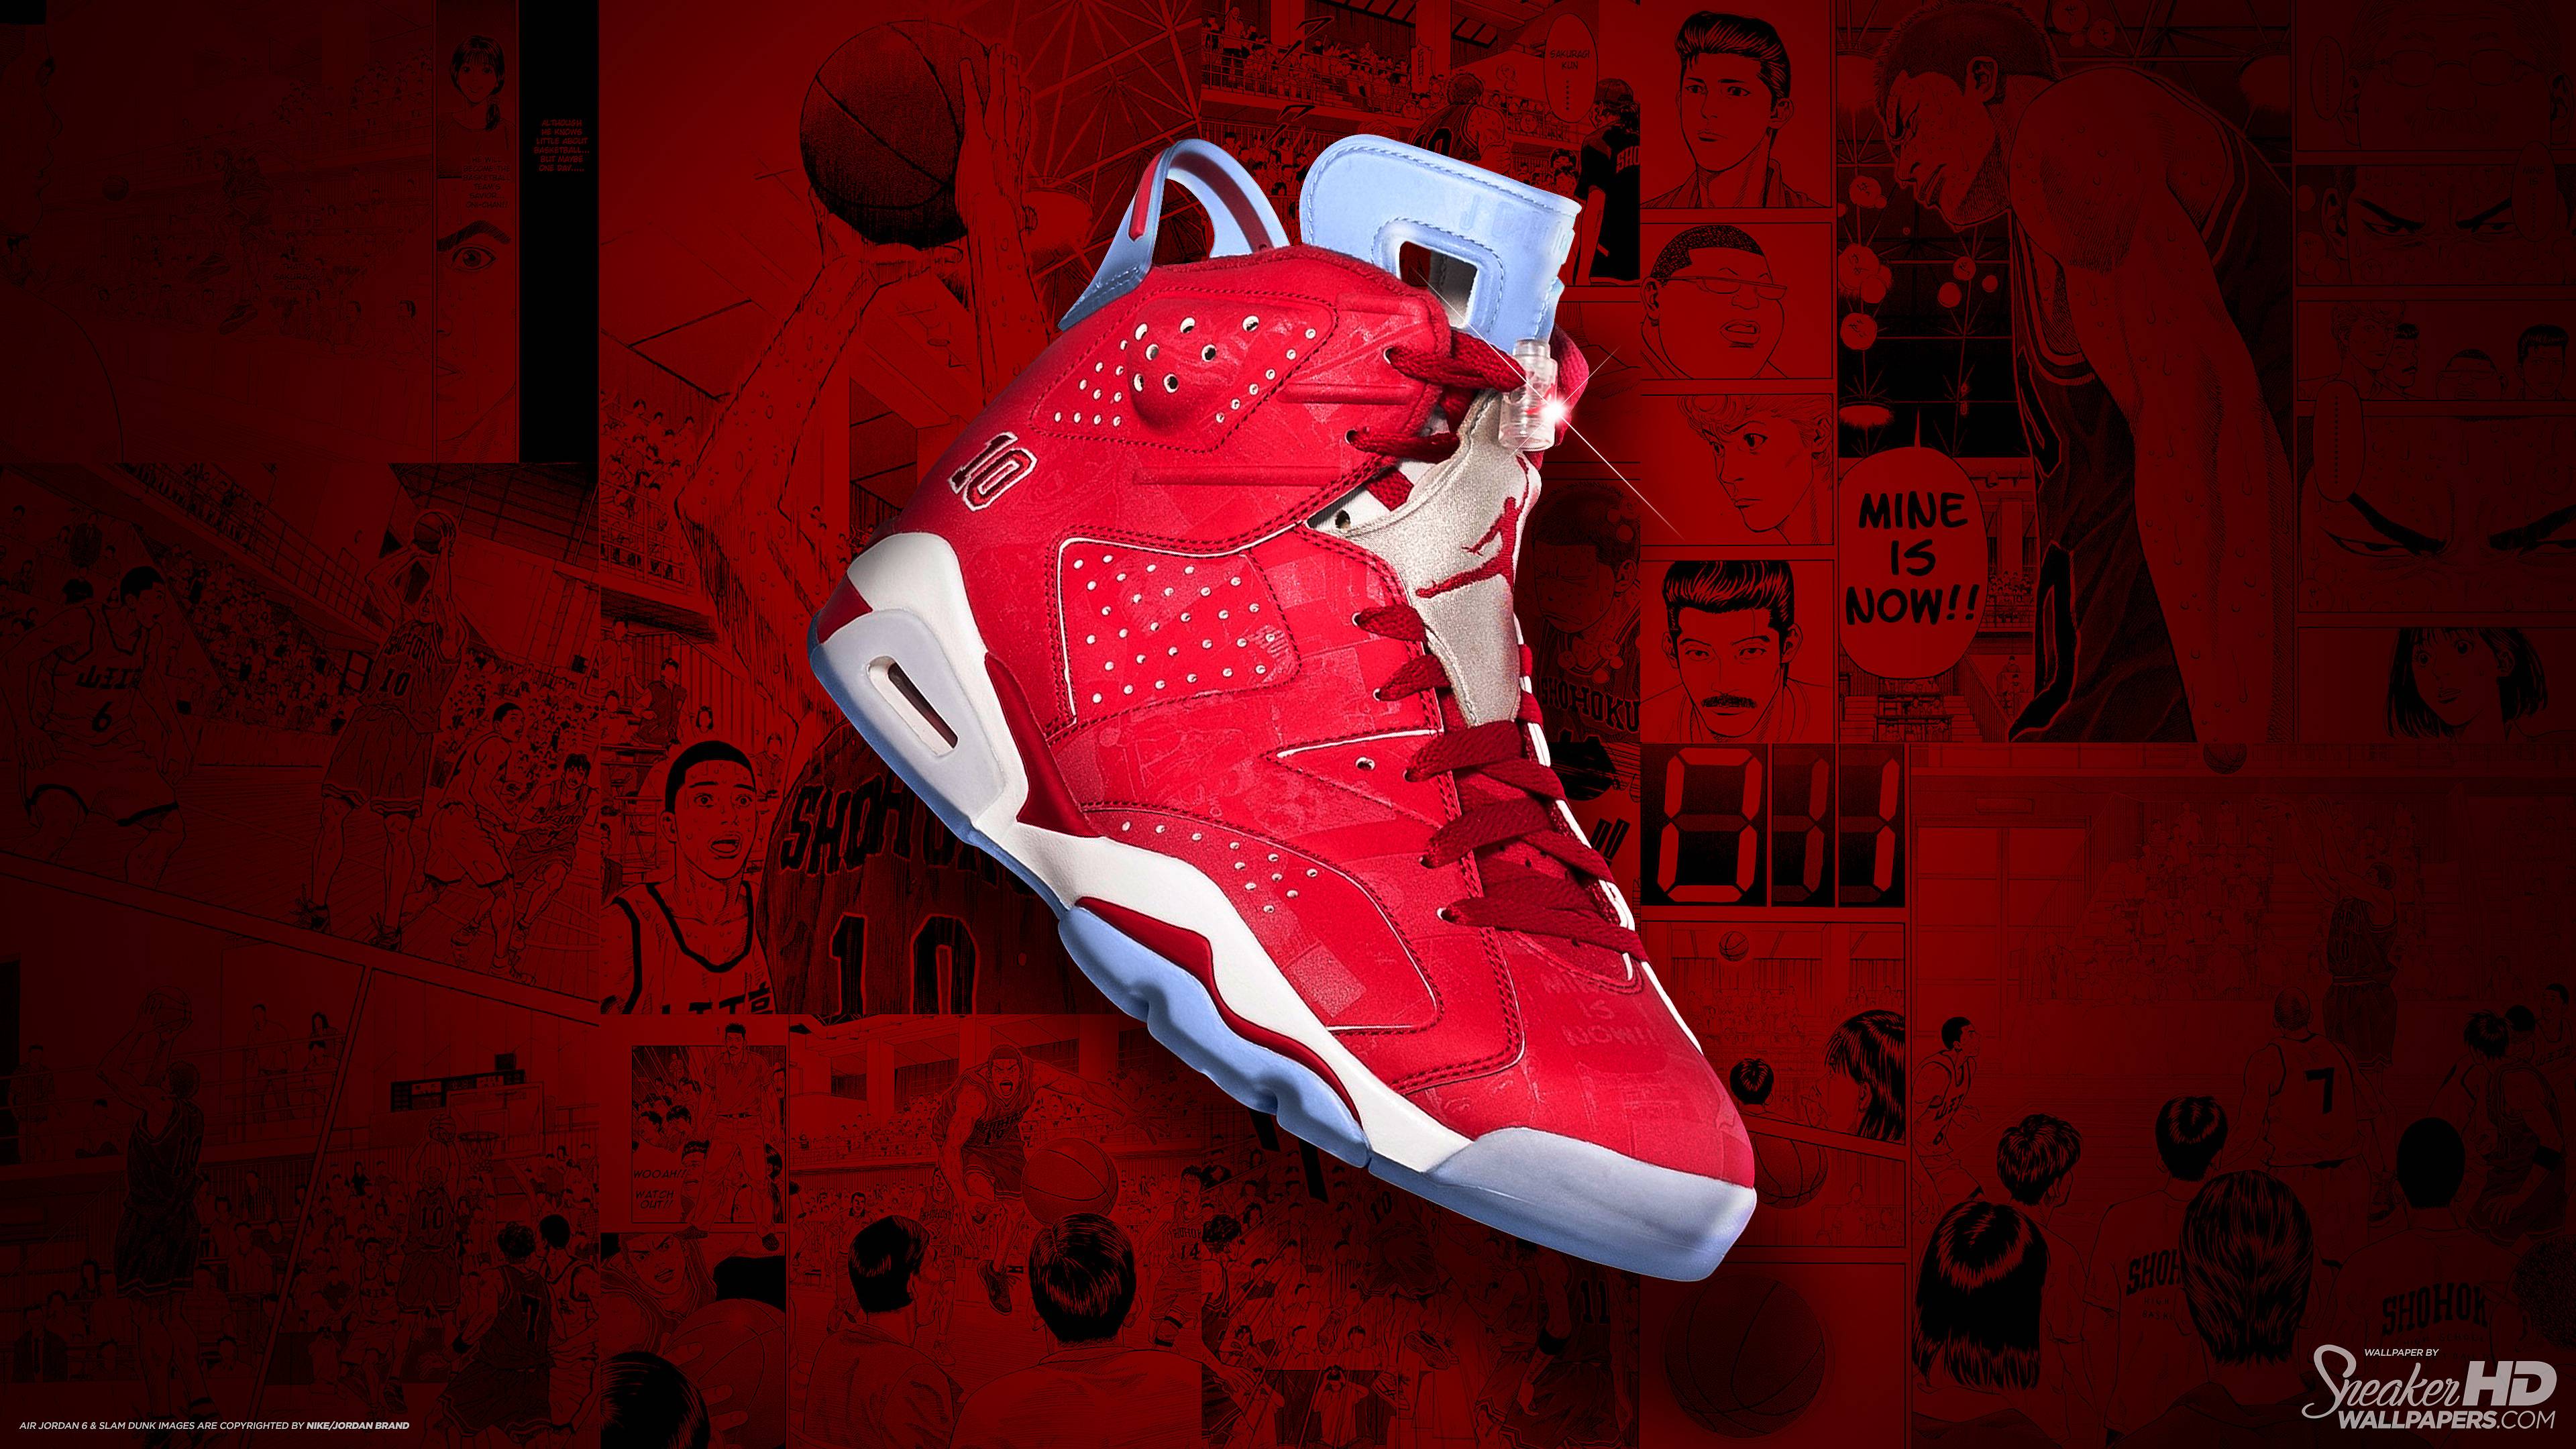 Red Jordan Wallpapers